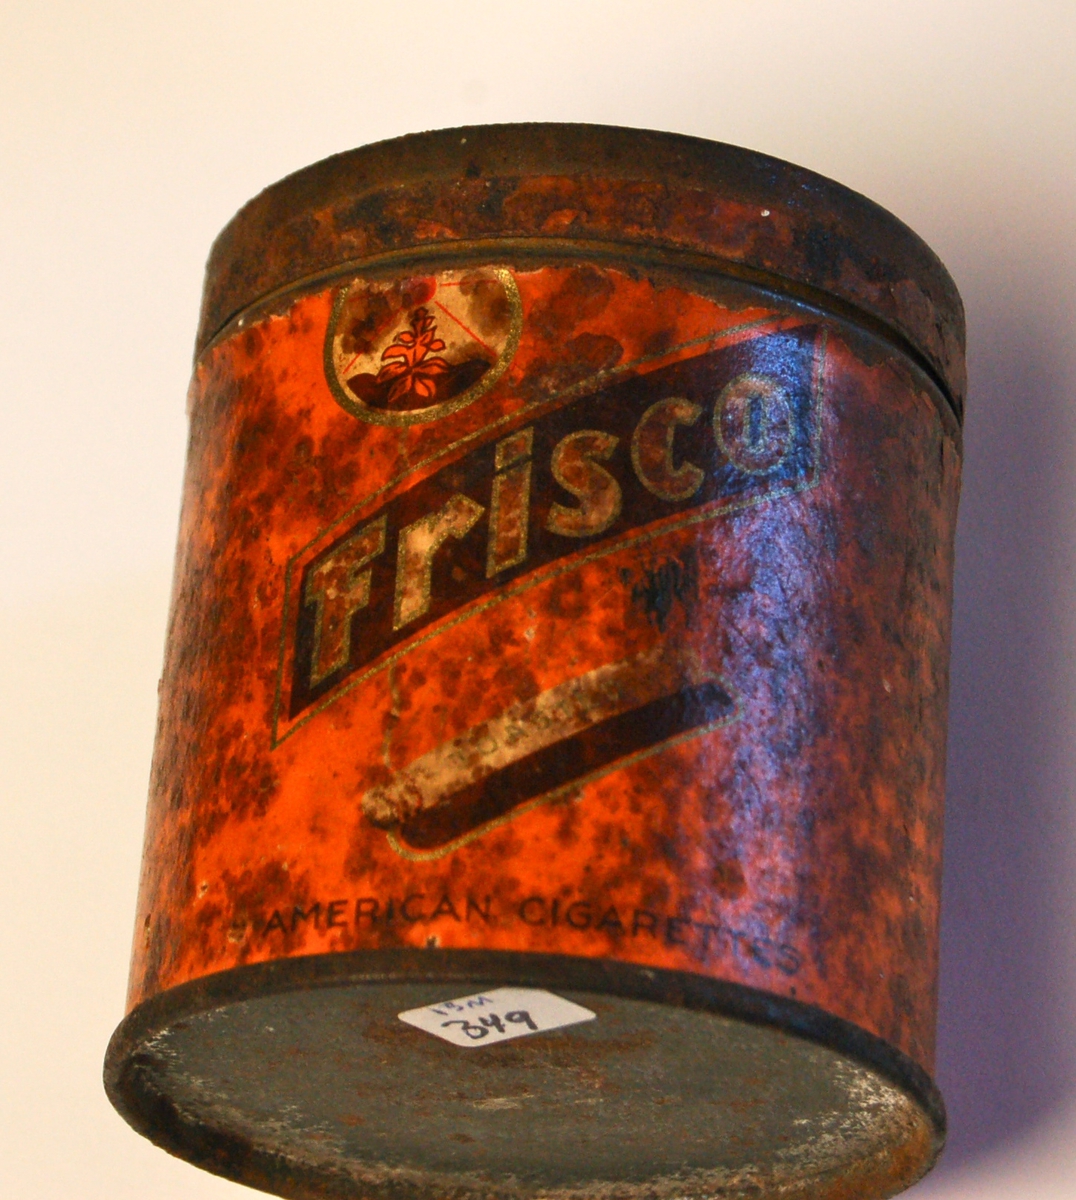 Sylinderforma boks med lokk til fabrikkrullet sigaretter.